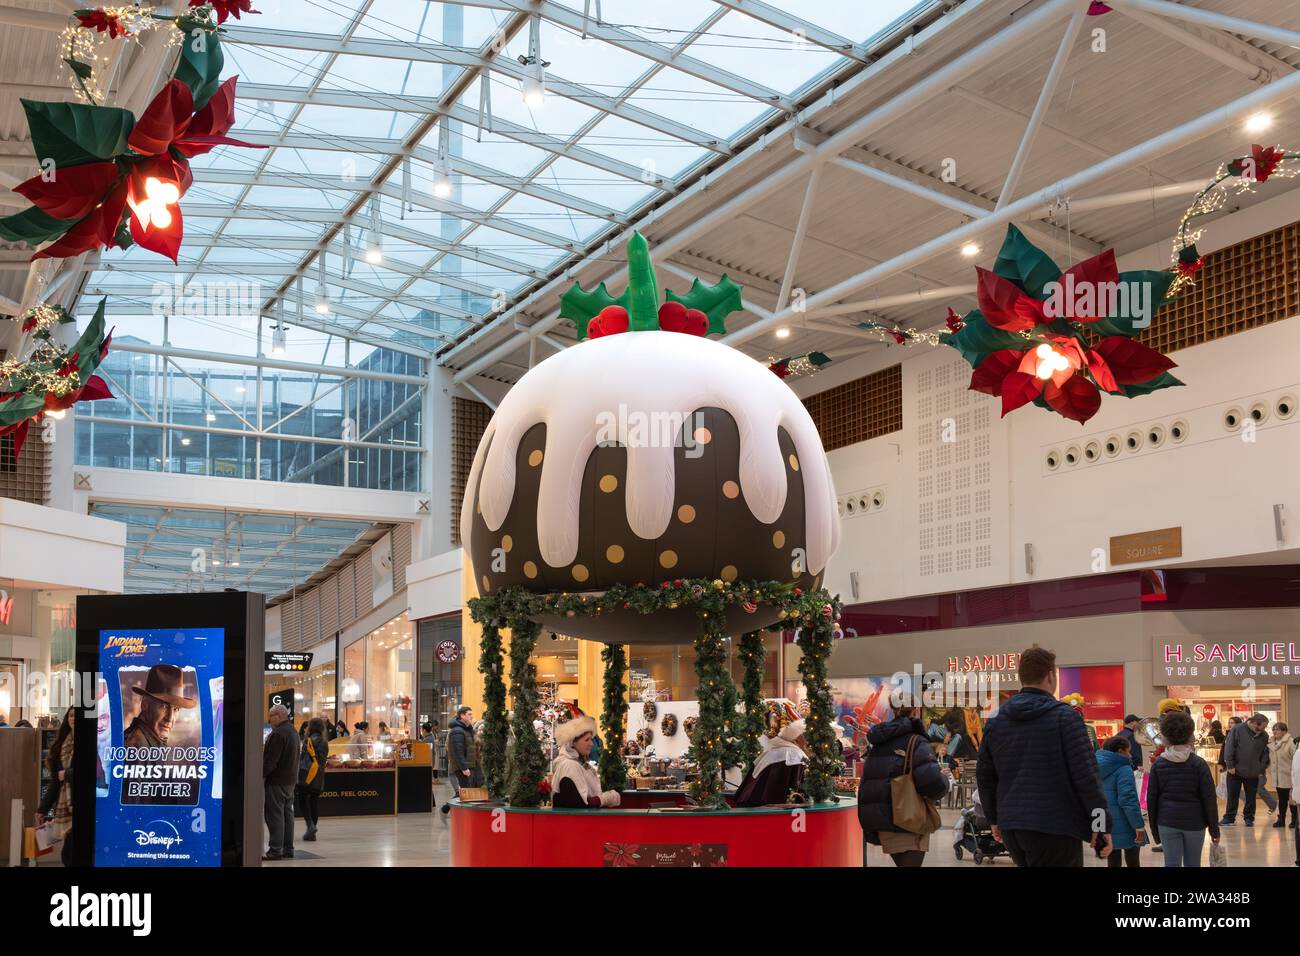 Les acheteurs achètent pour Noël en décembre à Porchester Square, place du Festival, avec une énorme décoration de pudding de Noël. Basingstoke, Royaume-Uni Banque D'Images